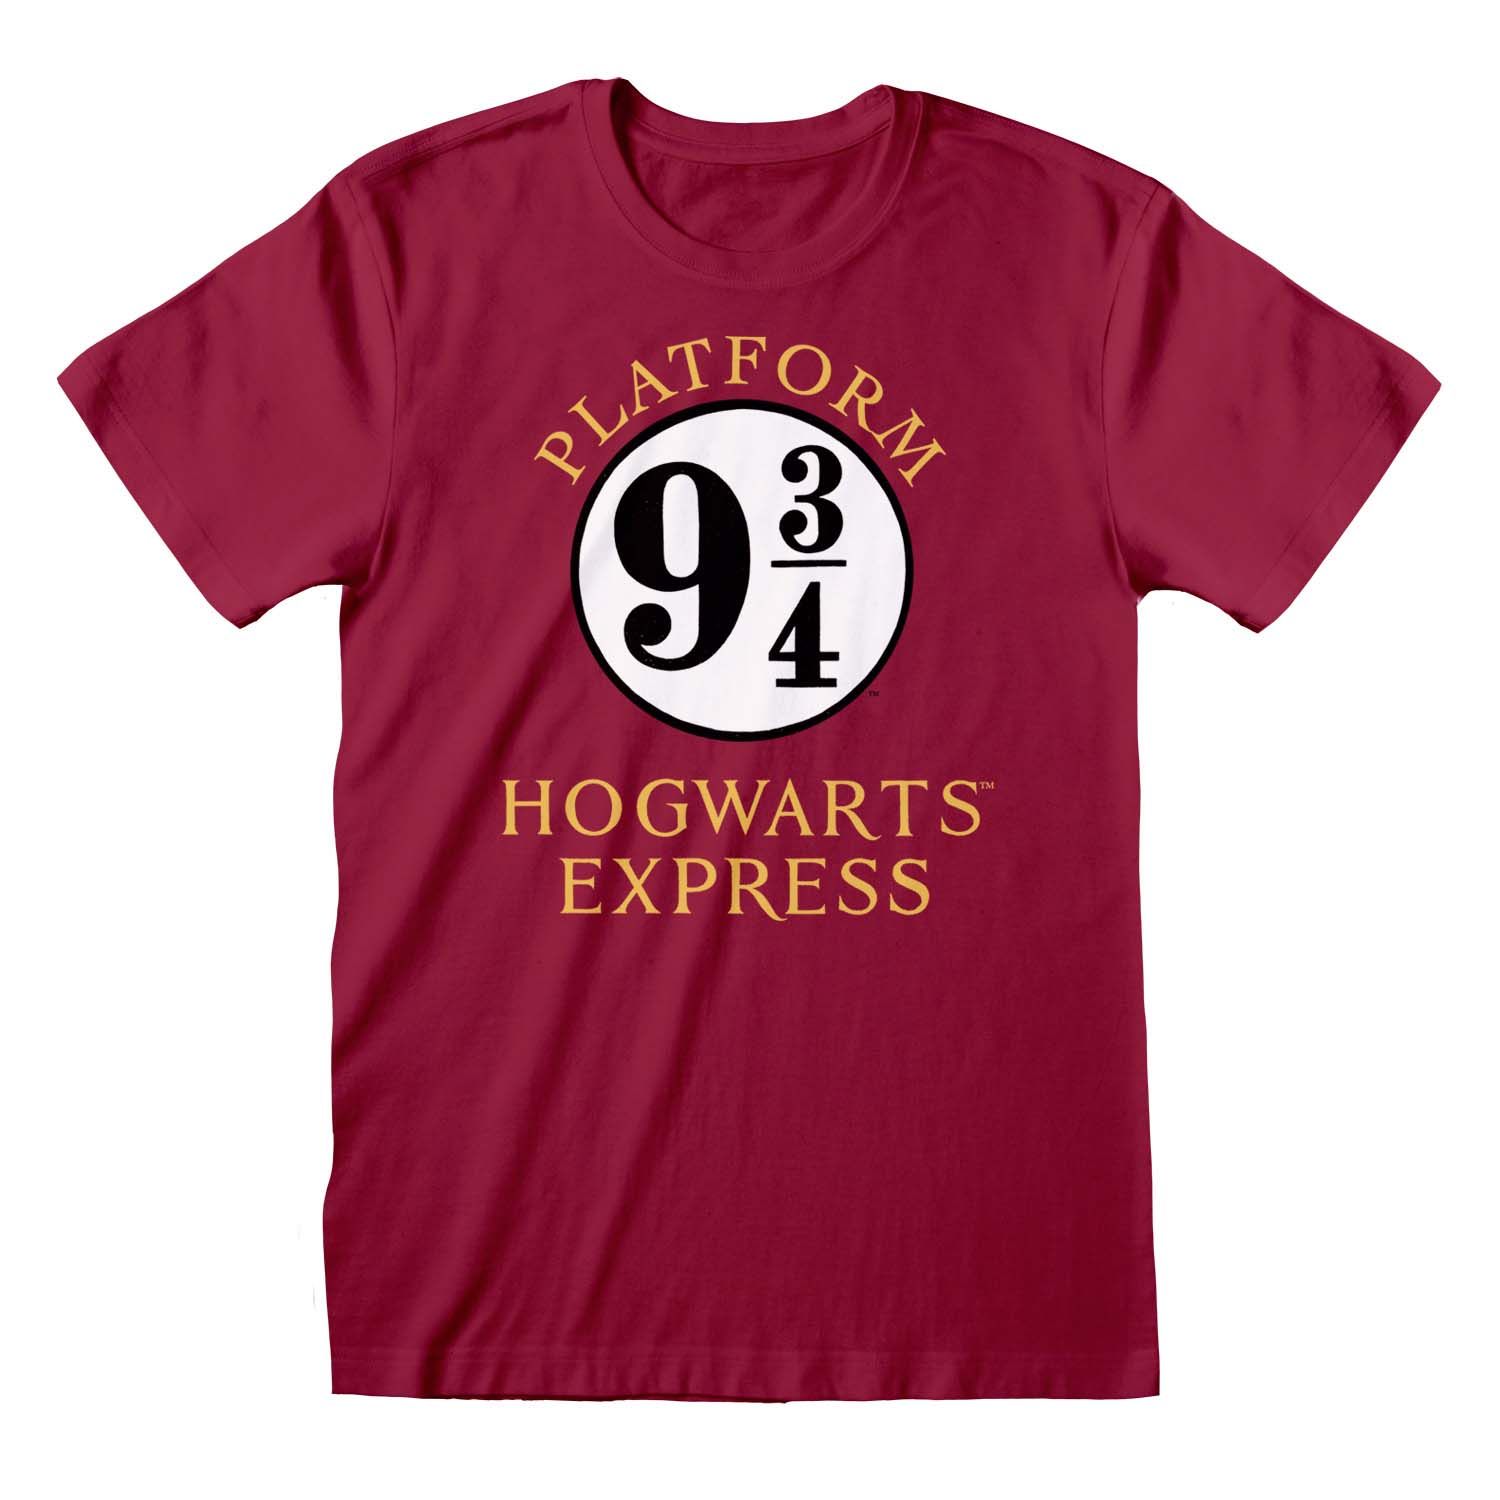 Platform 9 T-Shirt Hogwarts Express Harry Potter: 3/4 - Merchoid